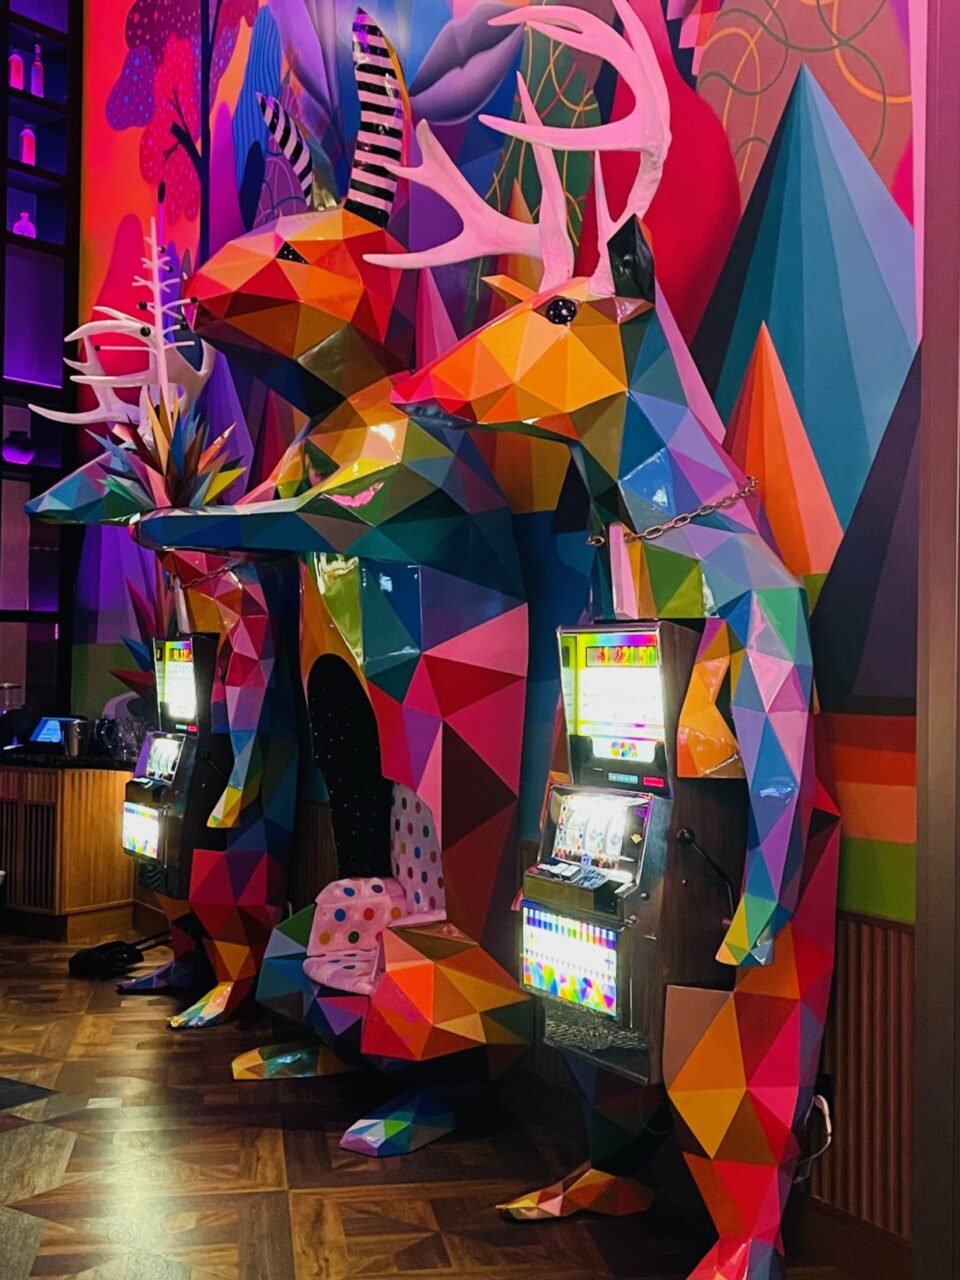 Fargerike spillmaskiner utformet som dyr. Foto